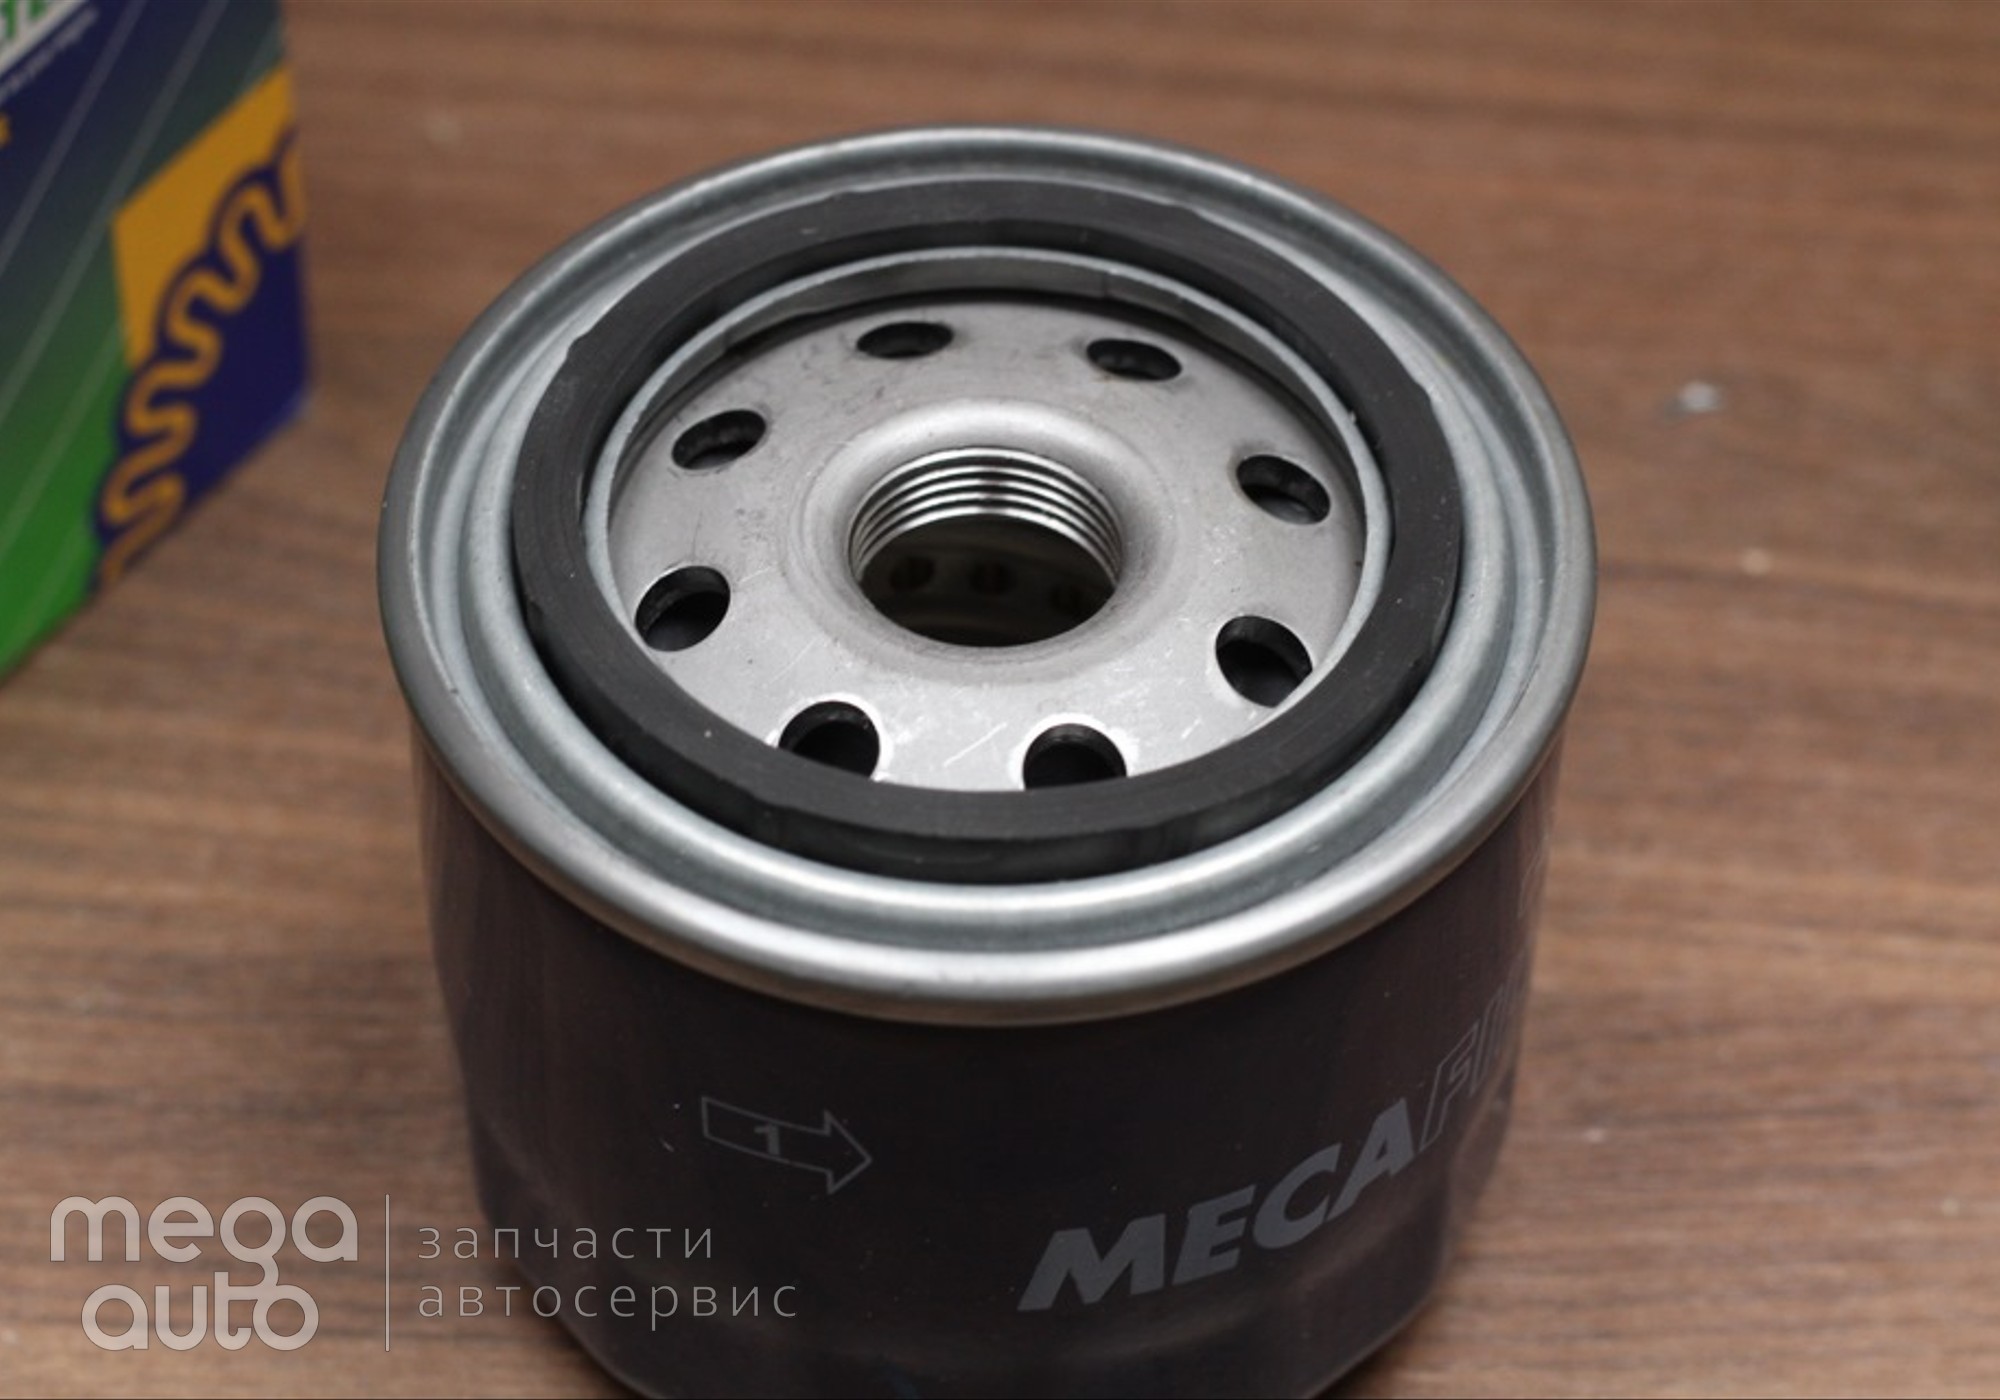 2630035530 Масляный фильтр хендай акцент( MecaFilter) для Audi 500